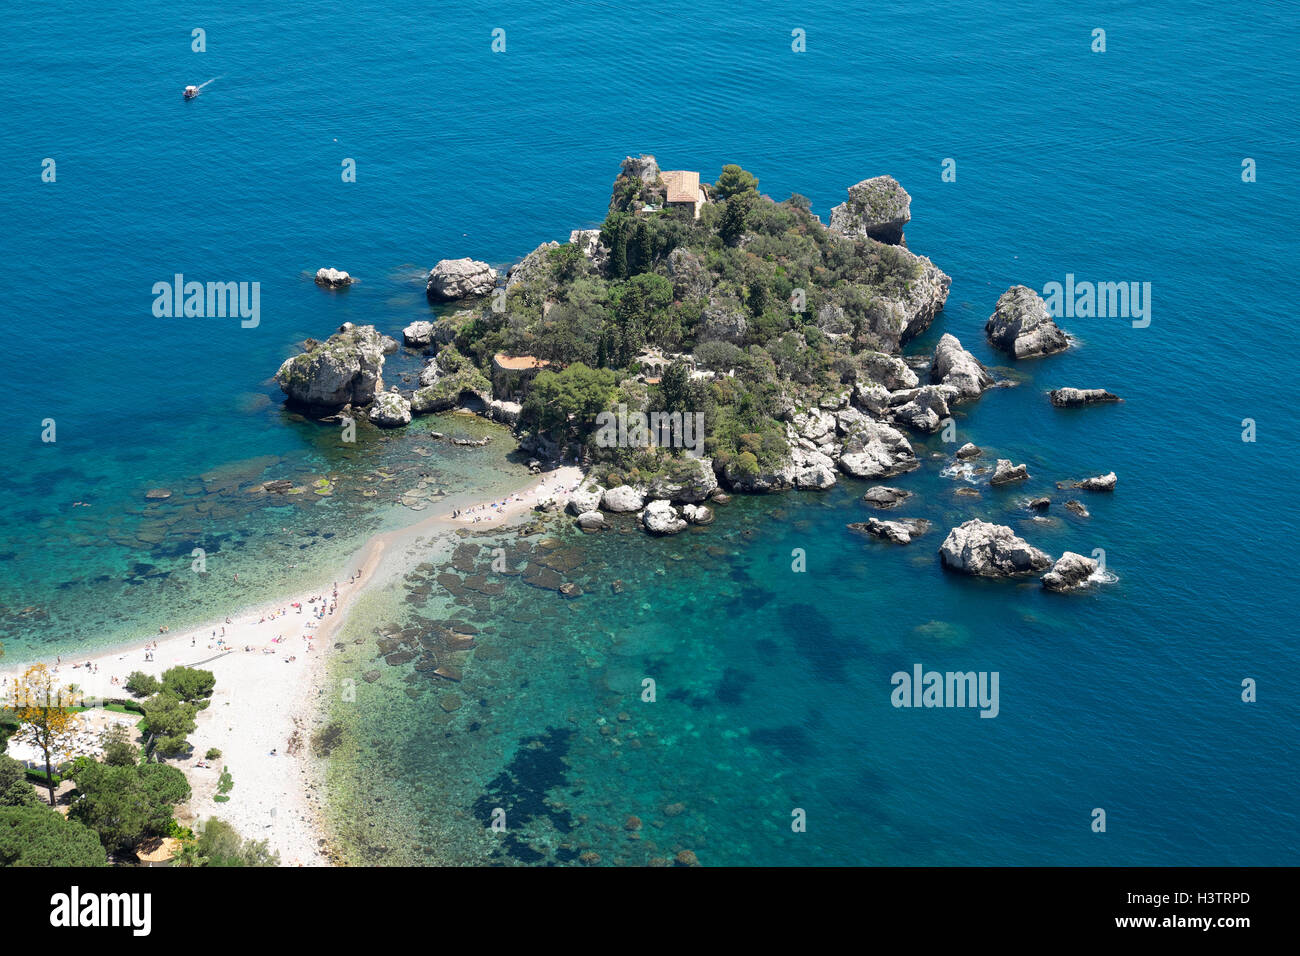 Isola Bella, Mazzaró près de Taormina, Sicile, Italie Banque D'Images